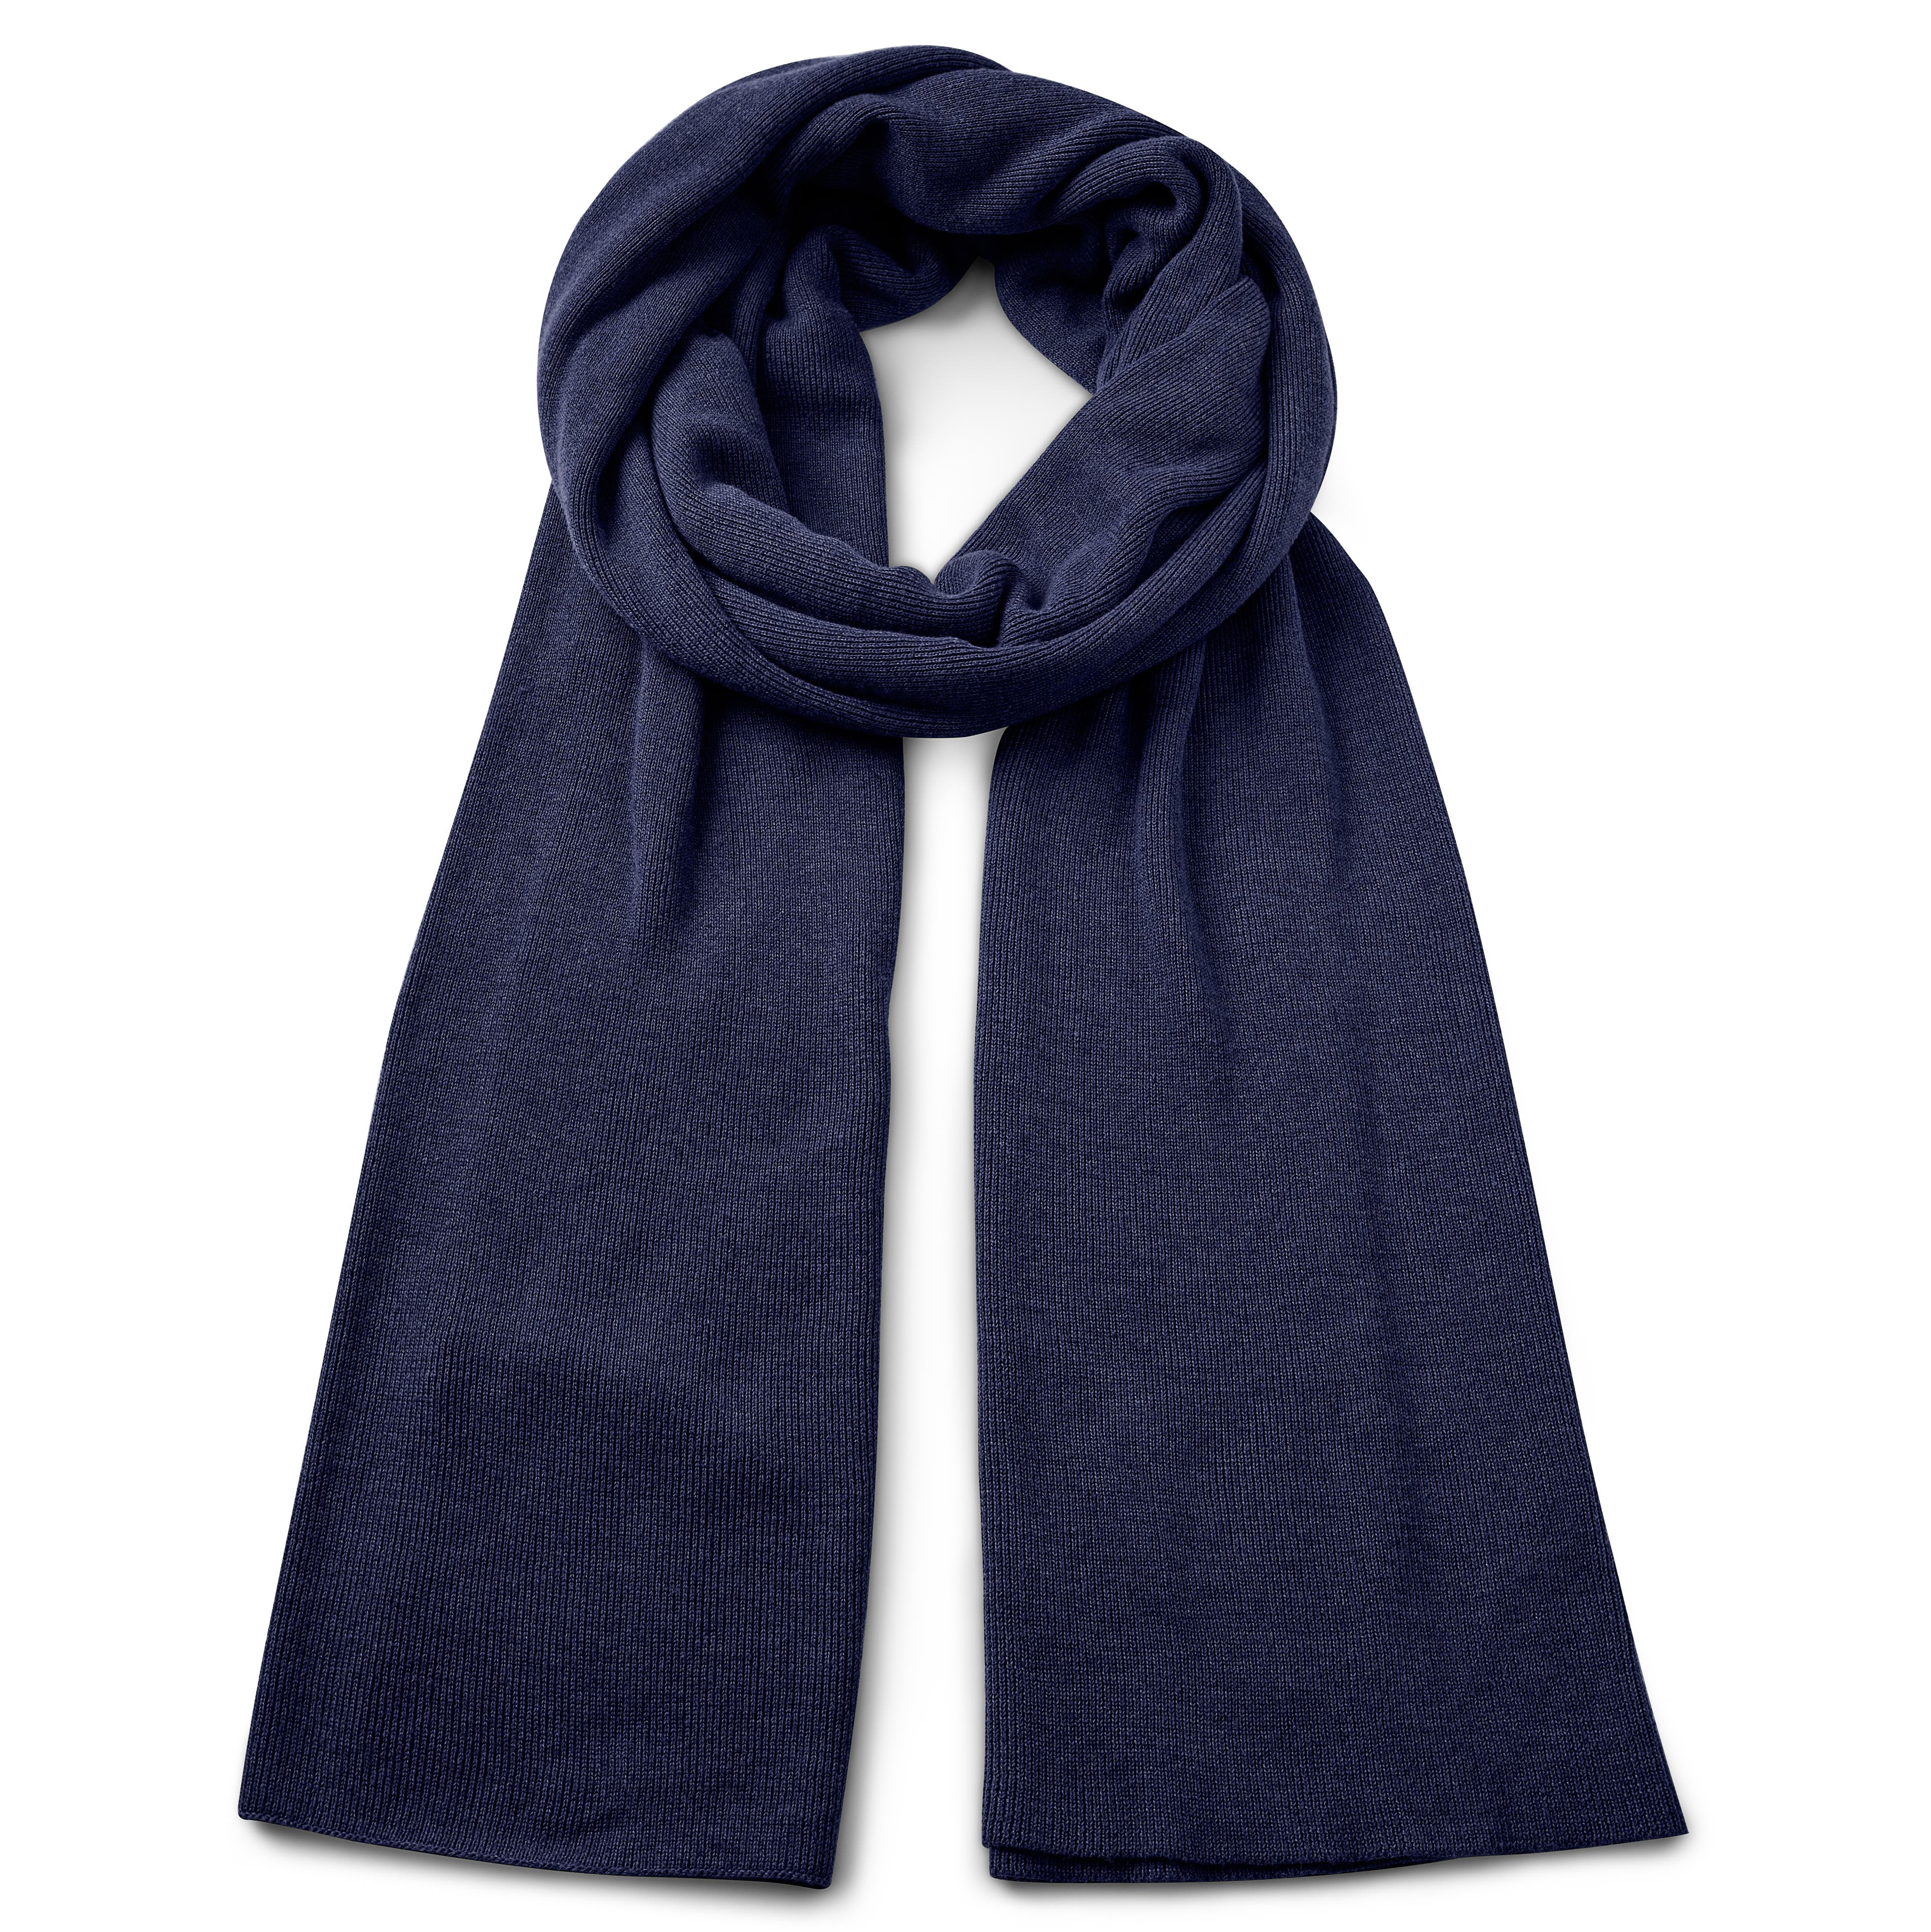 Hiems | Marineblauer Schal aus recycelter Baumwolle